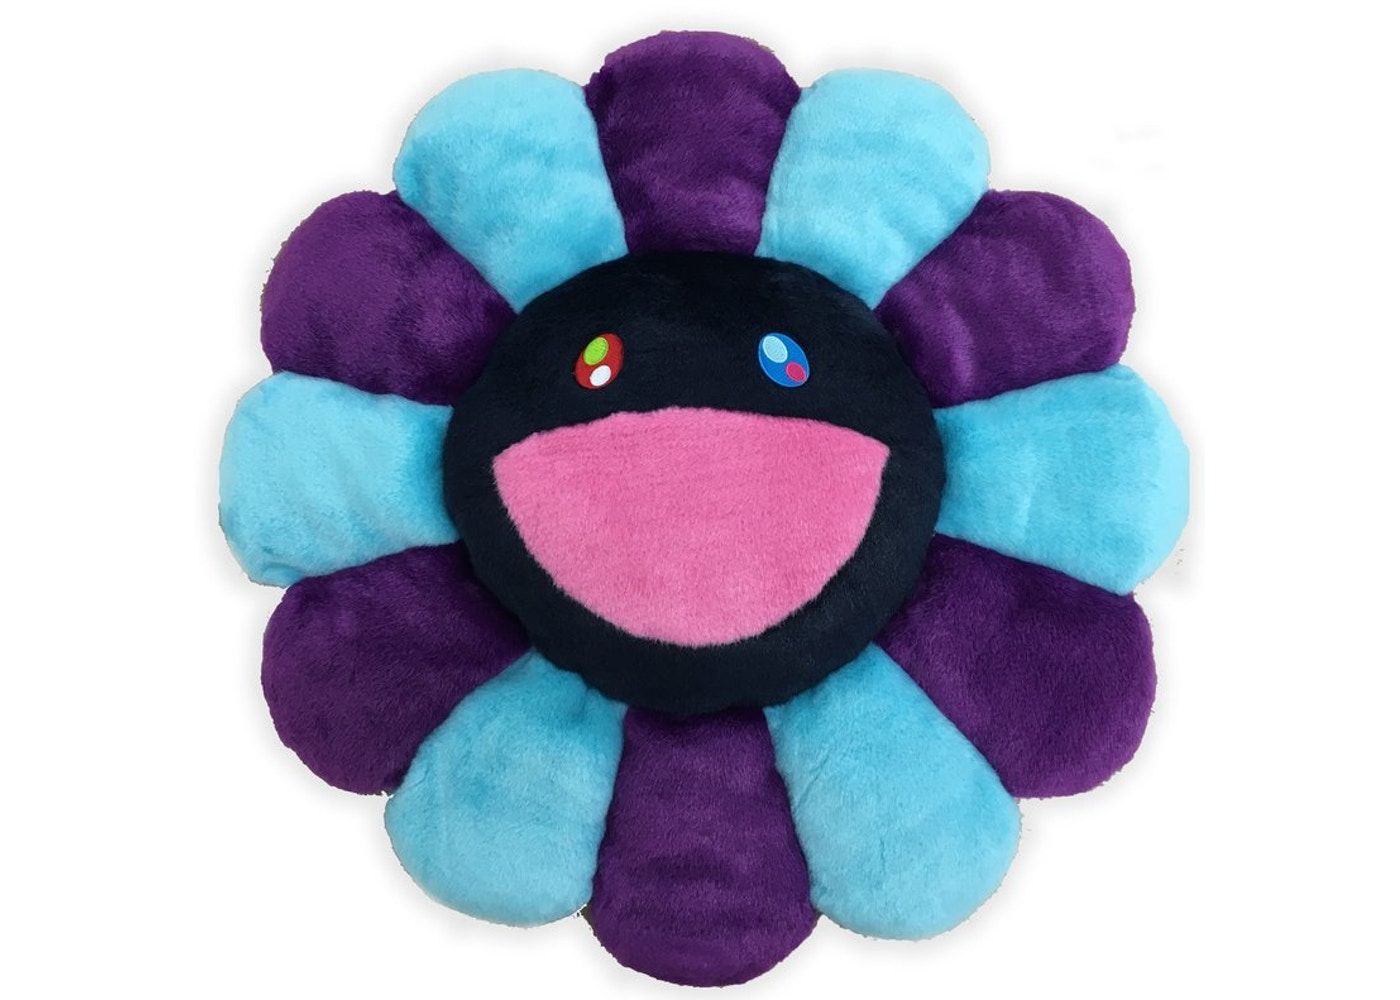 Мягкая плюшевая фигурка Takashi Murakami Flower, 60 см, фиолетовый/голубой/черный мягкая фигурка игрушка